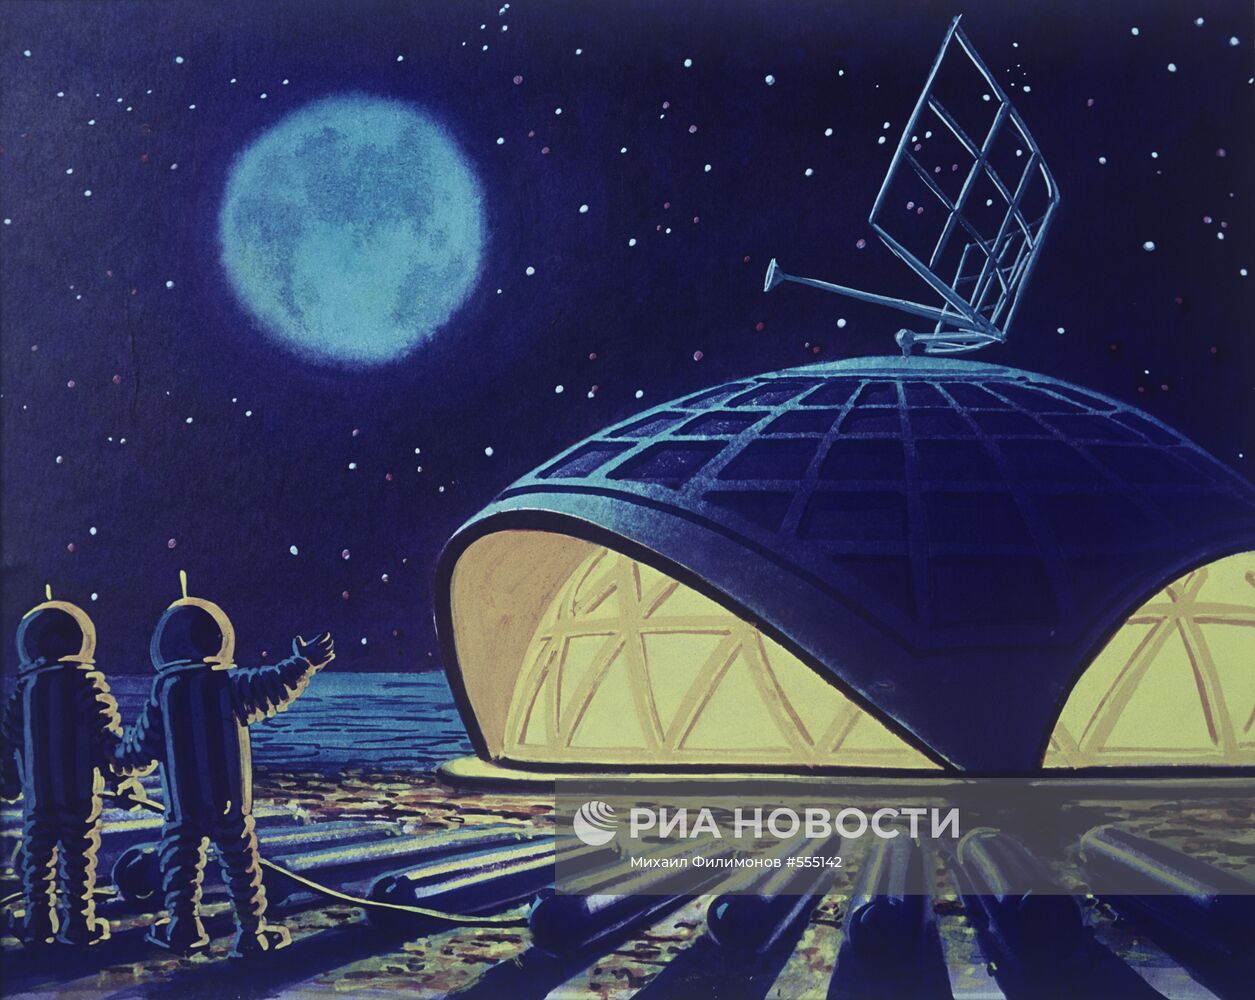 Репродукция картины А.Соколова "Лунный дом"